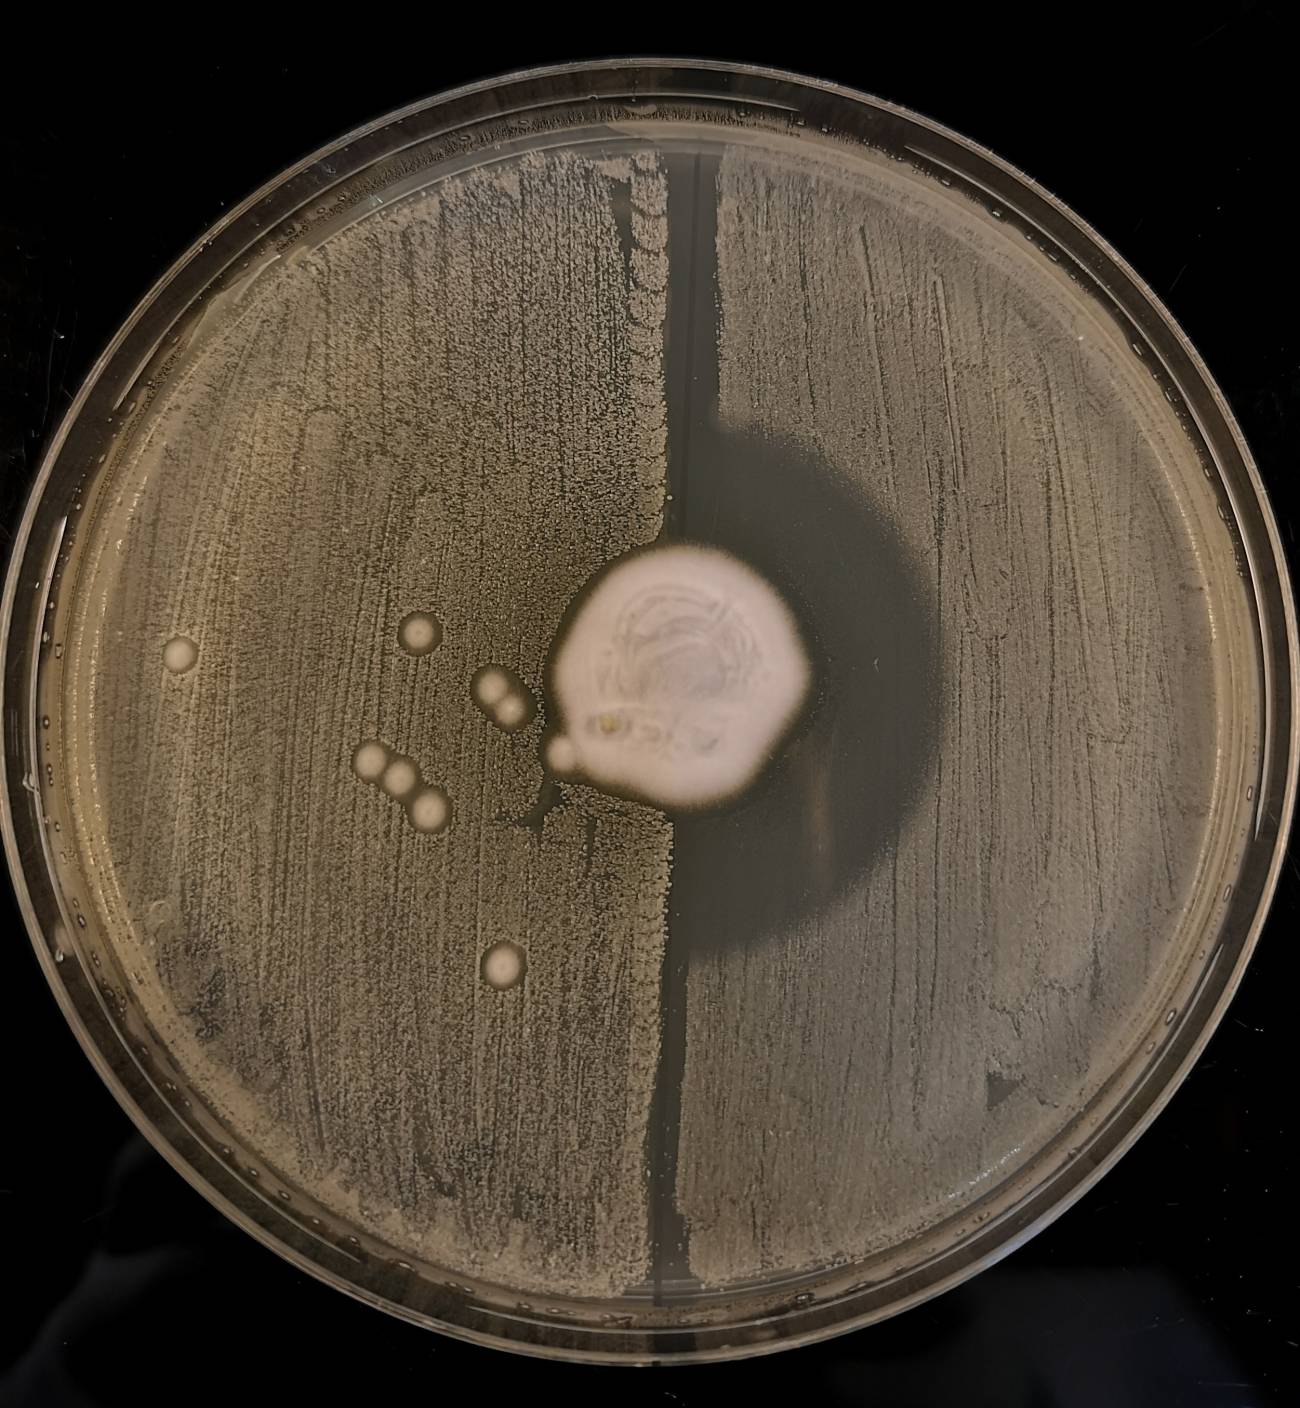 Estudio revela que bacteria Staphylococcus aureus  apareció en los erizos, donde también vive hongo parásito que produce antibióticos contra ella de forma natural.